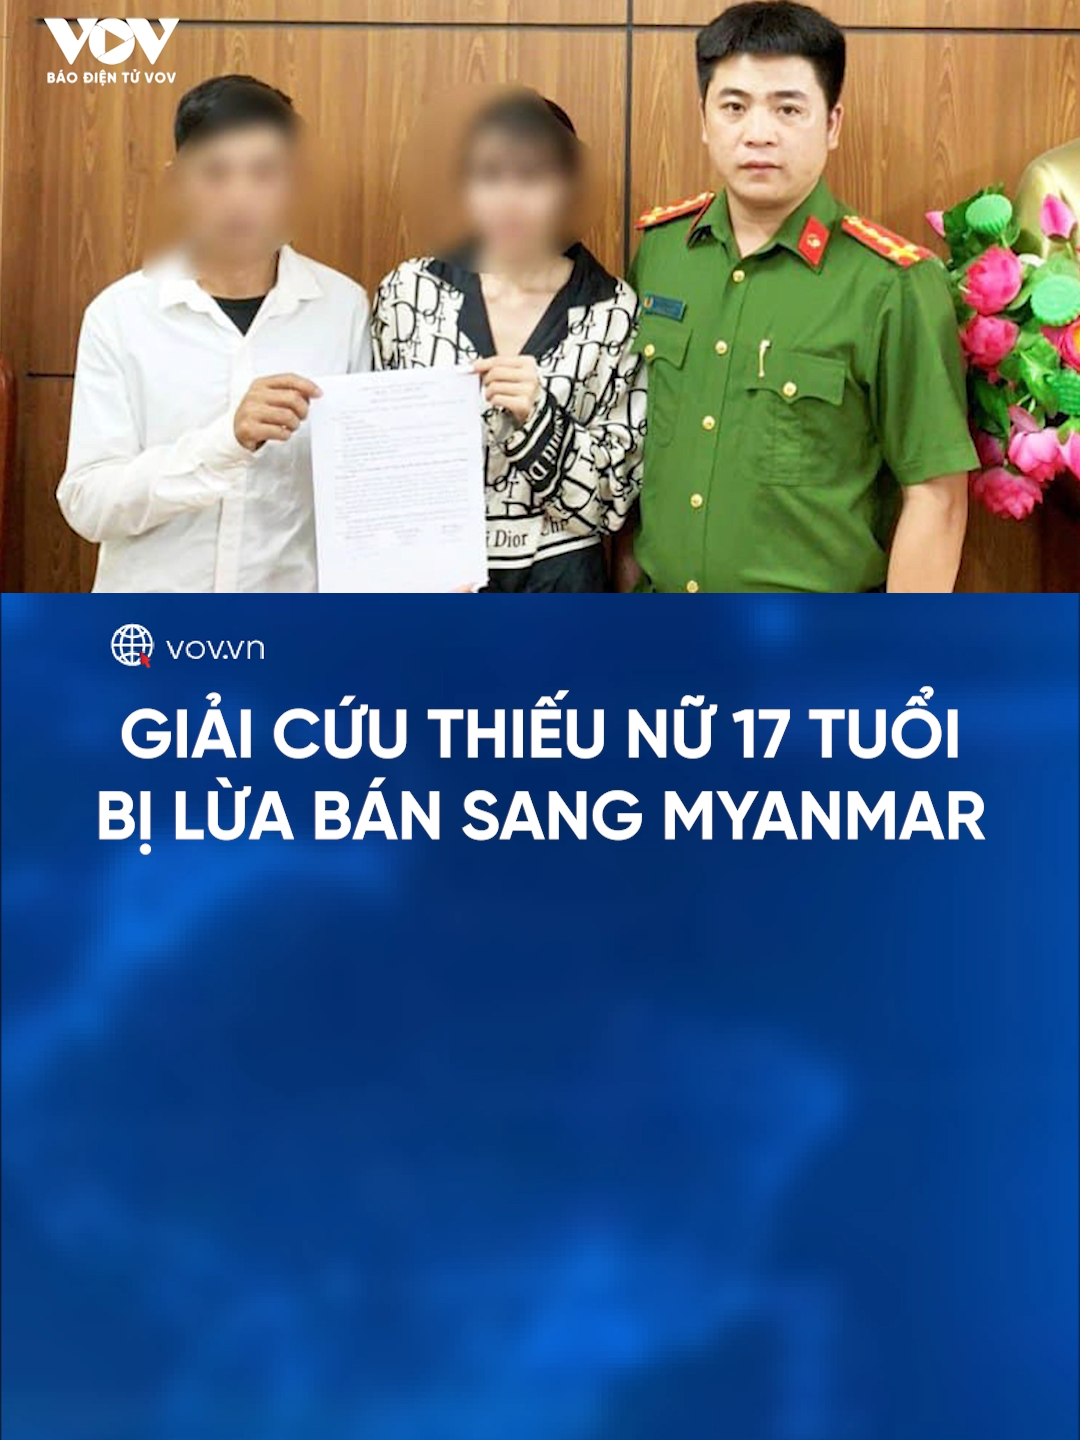 Phòng Cảnh sát Hình sự, Công an tỉnh Lai Châu vừa giải cứu thành công một thiếu nữ bị lừa bán sang Myanmar để lao động, với chiêu trò dụ dỗ đi làm 